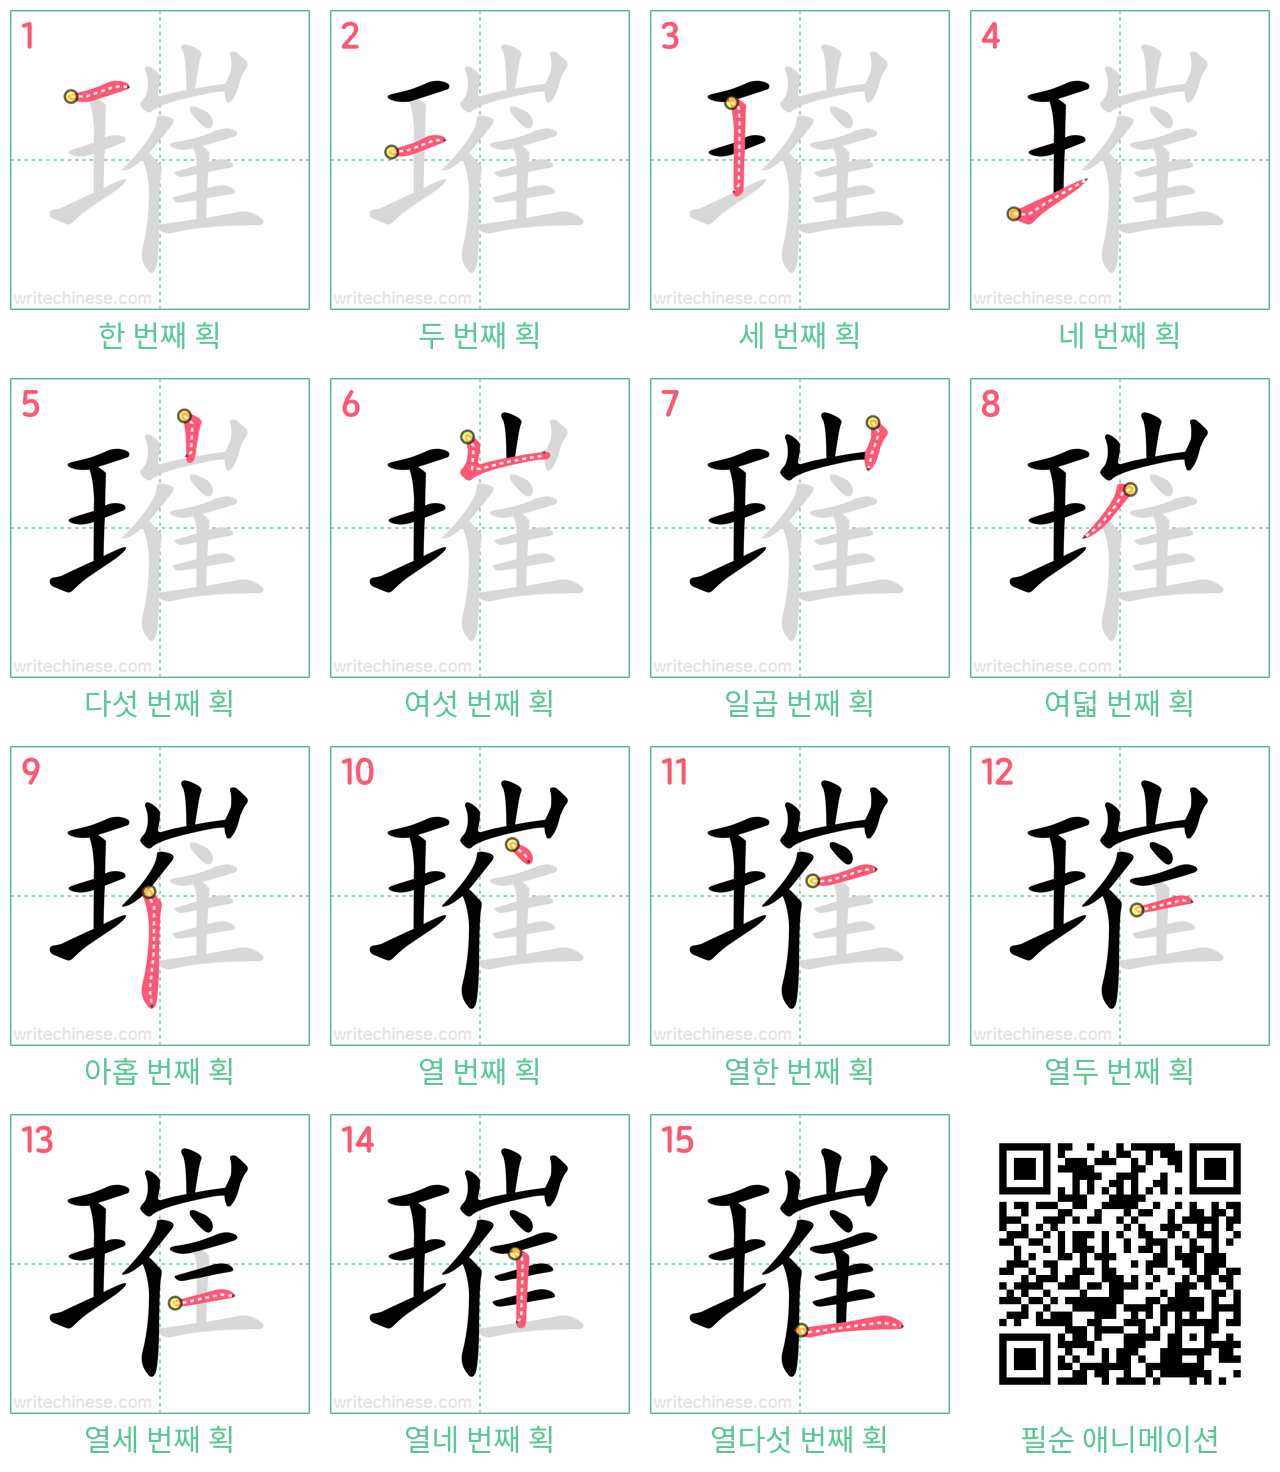 璀 step-by-step stroke order diagrams